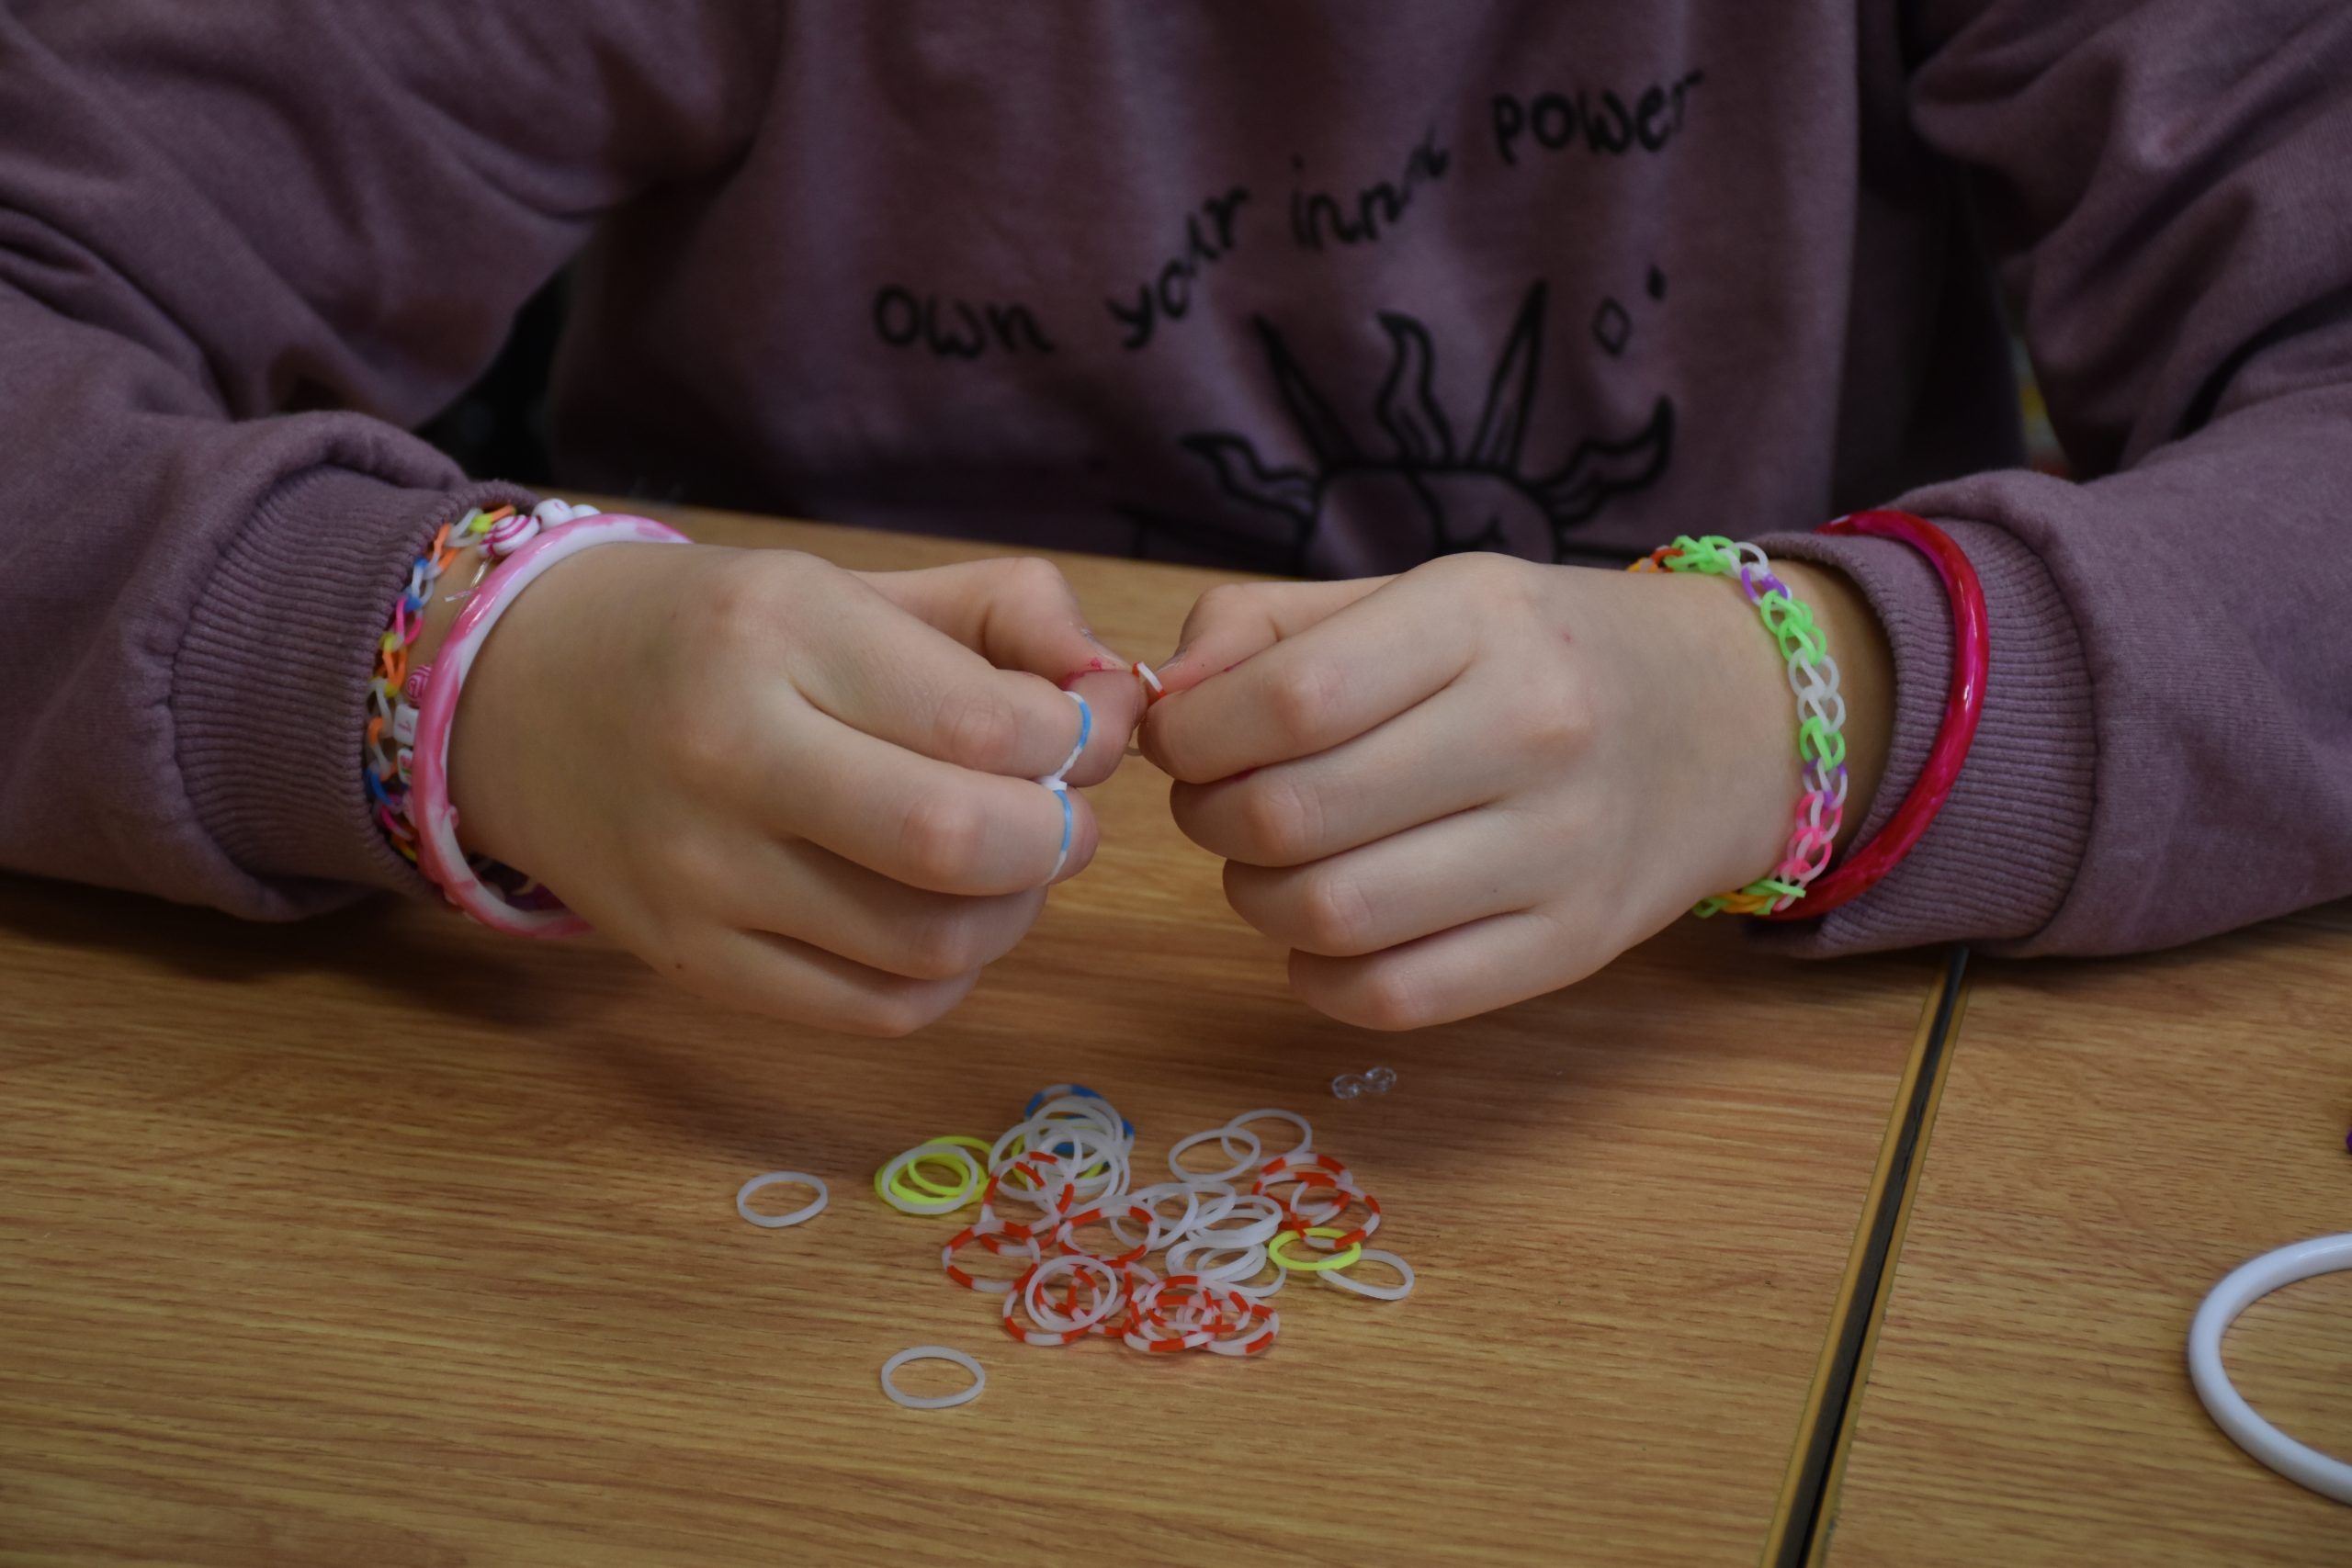 Tworzenie bransoletki - kolorowe zdjęcie przedstawiające dłonie podczas plecenie bransoletki.